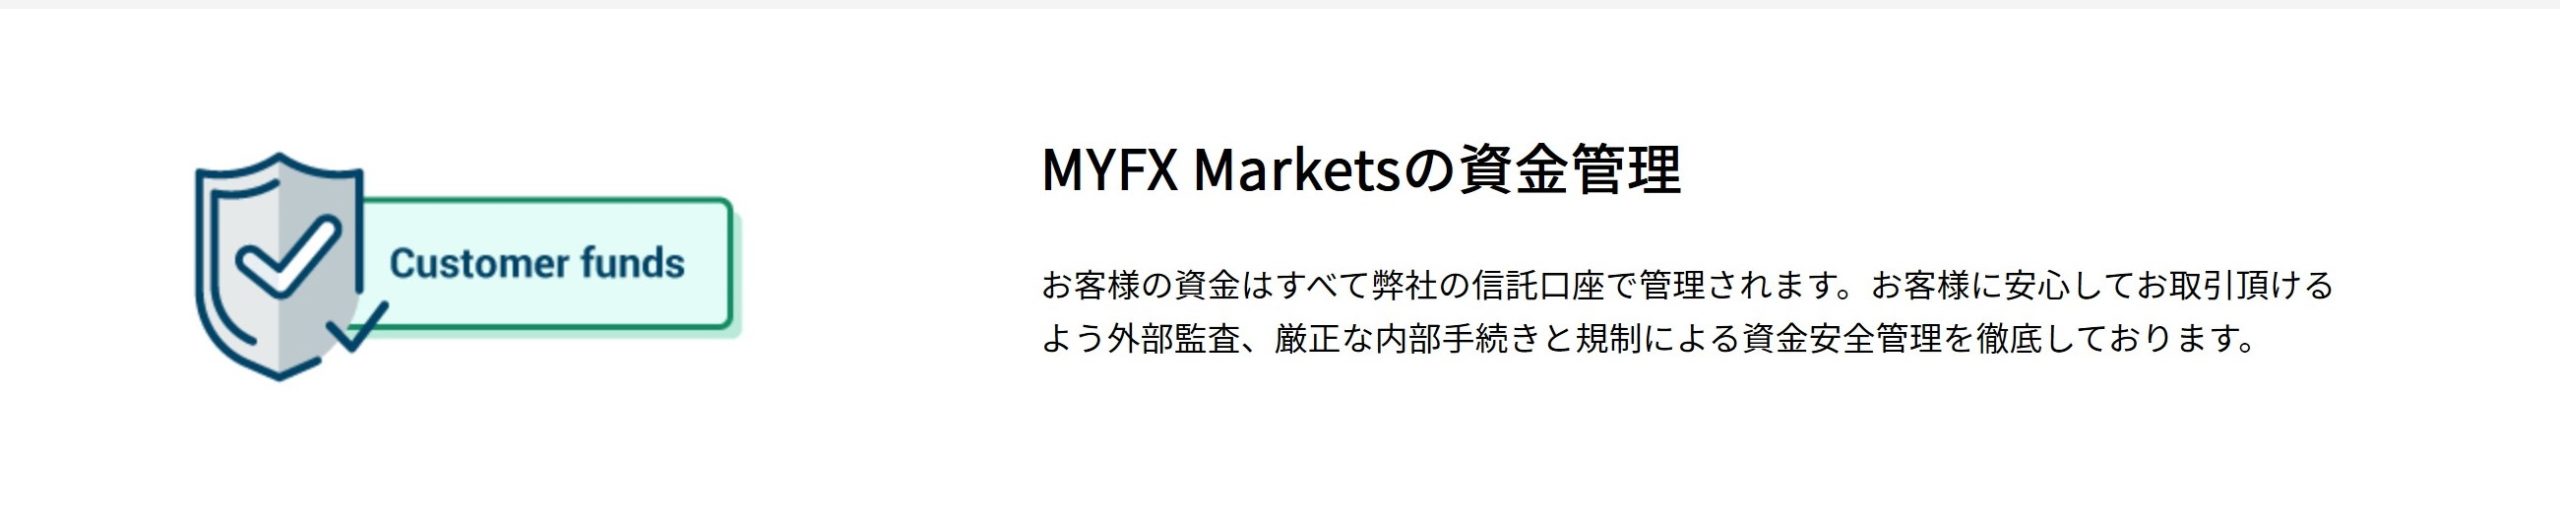 海外FX MYFX Marketsは信託保全の会社です。顧客(ユーザー)の資金を安全管理します